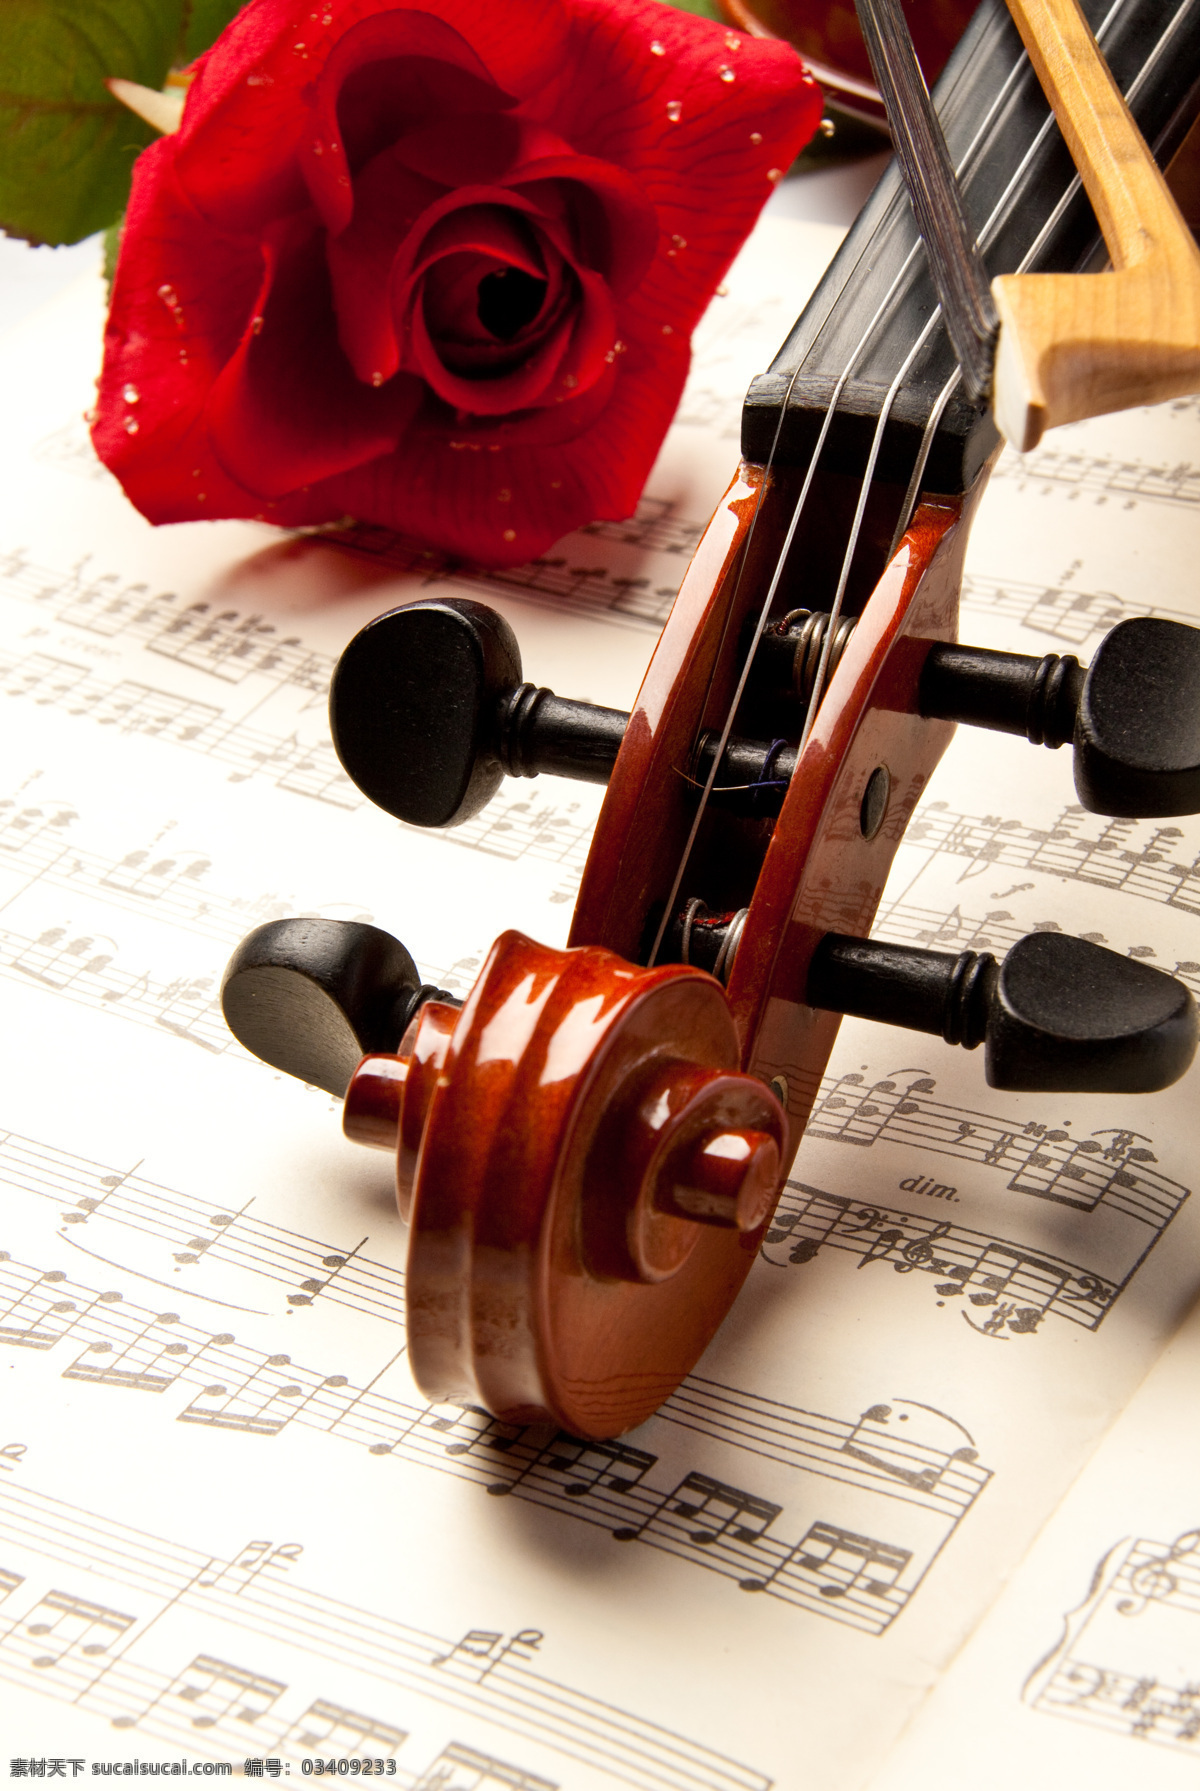 小提琴 红玫瑰 乐谱 乐器 玫瑰花 文化艺术 舞蹈音乐 木质小提琴 红木小提琴 psd源文件